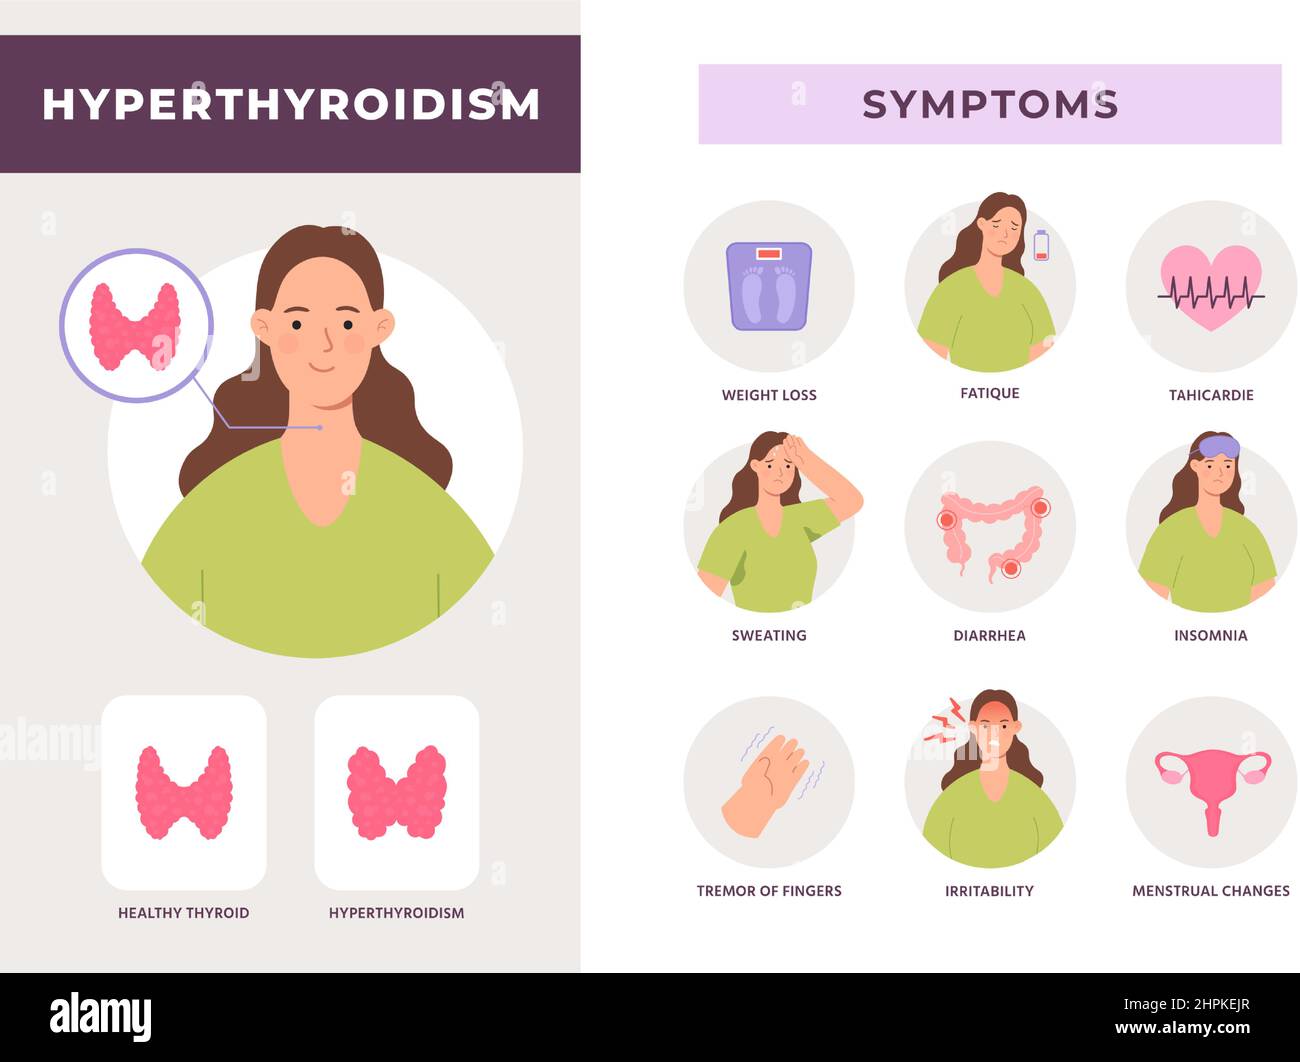 Symptome einer Schilddrüsenüberfunktion Infografik, überaktive Schilddrüsenerkrankung. Gesundheit des endokrinen Systems mit flachem Frauen-Charakter-Vektor-Poster Stock Vektor